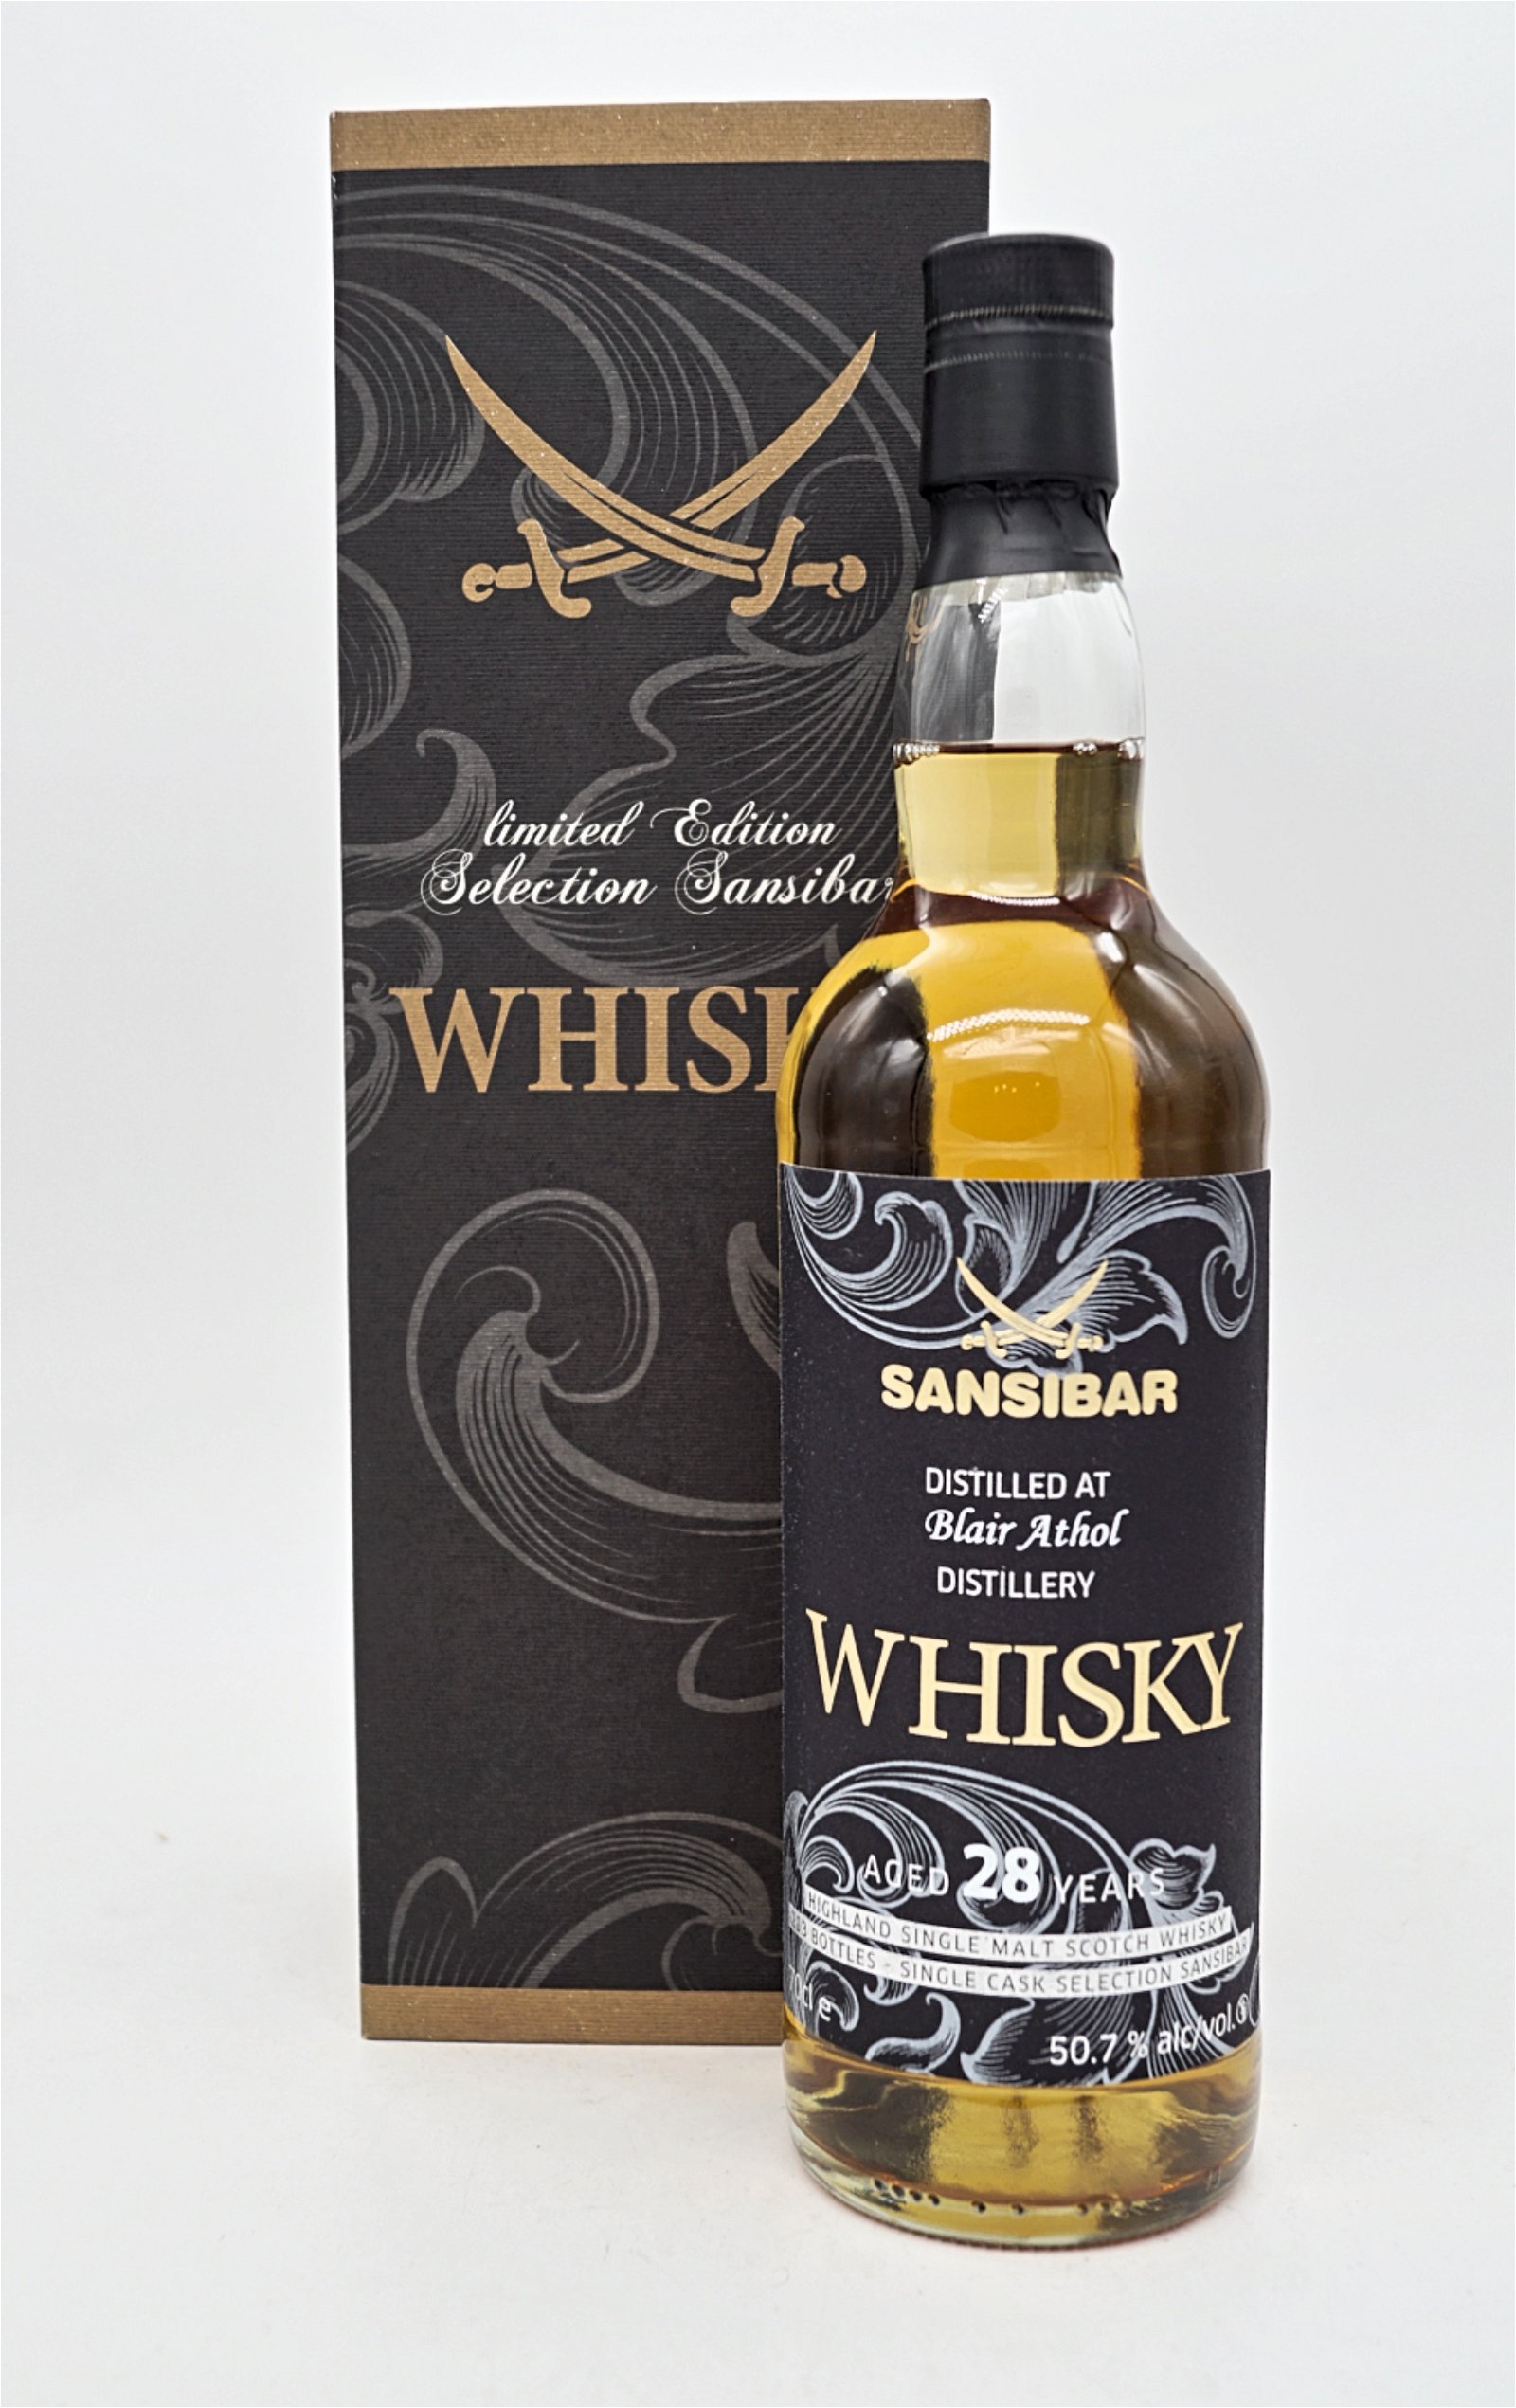 Sansibar Whisky 28 Jahre Blair Athol Distillery 1988/2016 Limited Edition Single Cask Single Malt Scotch Whisky